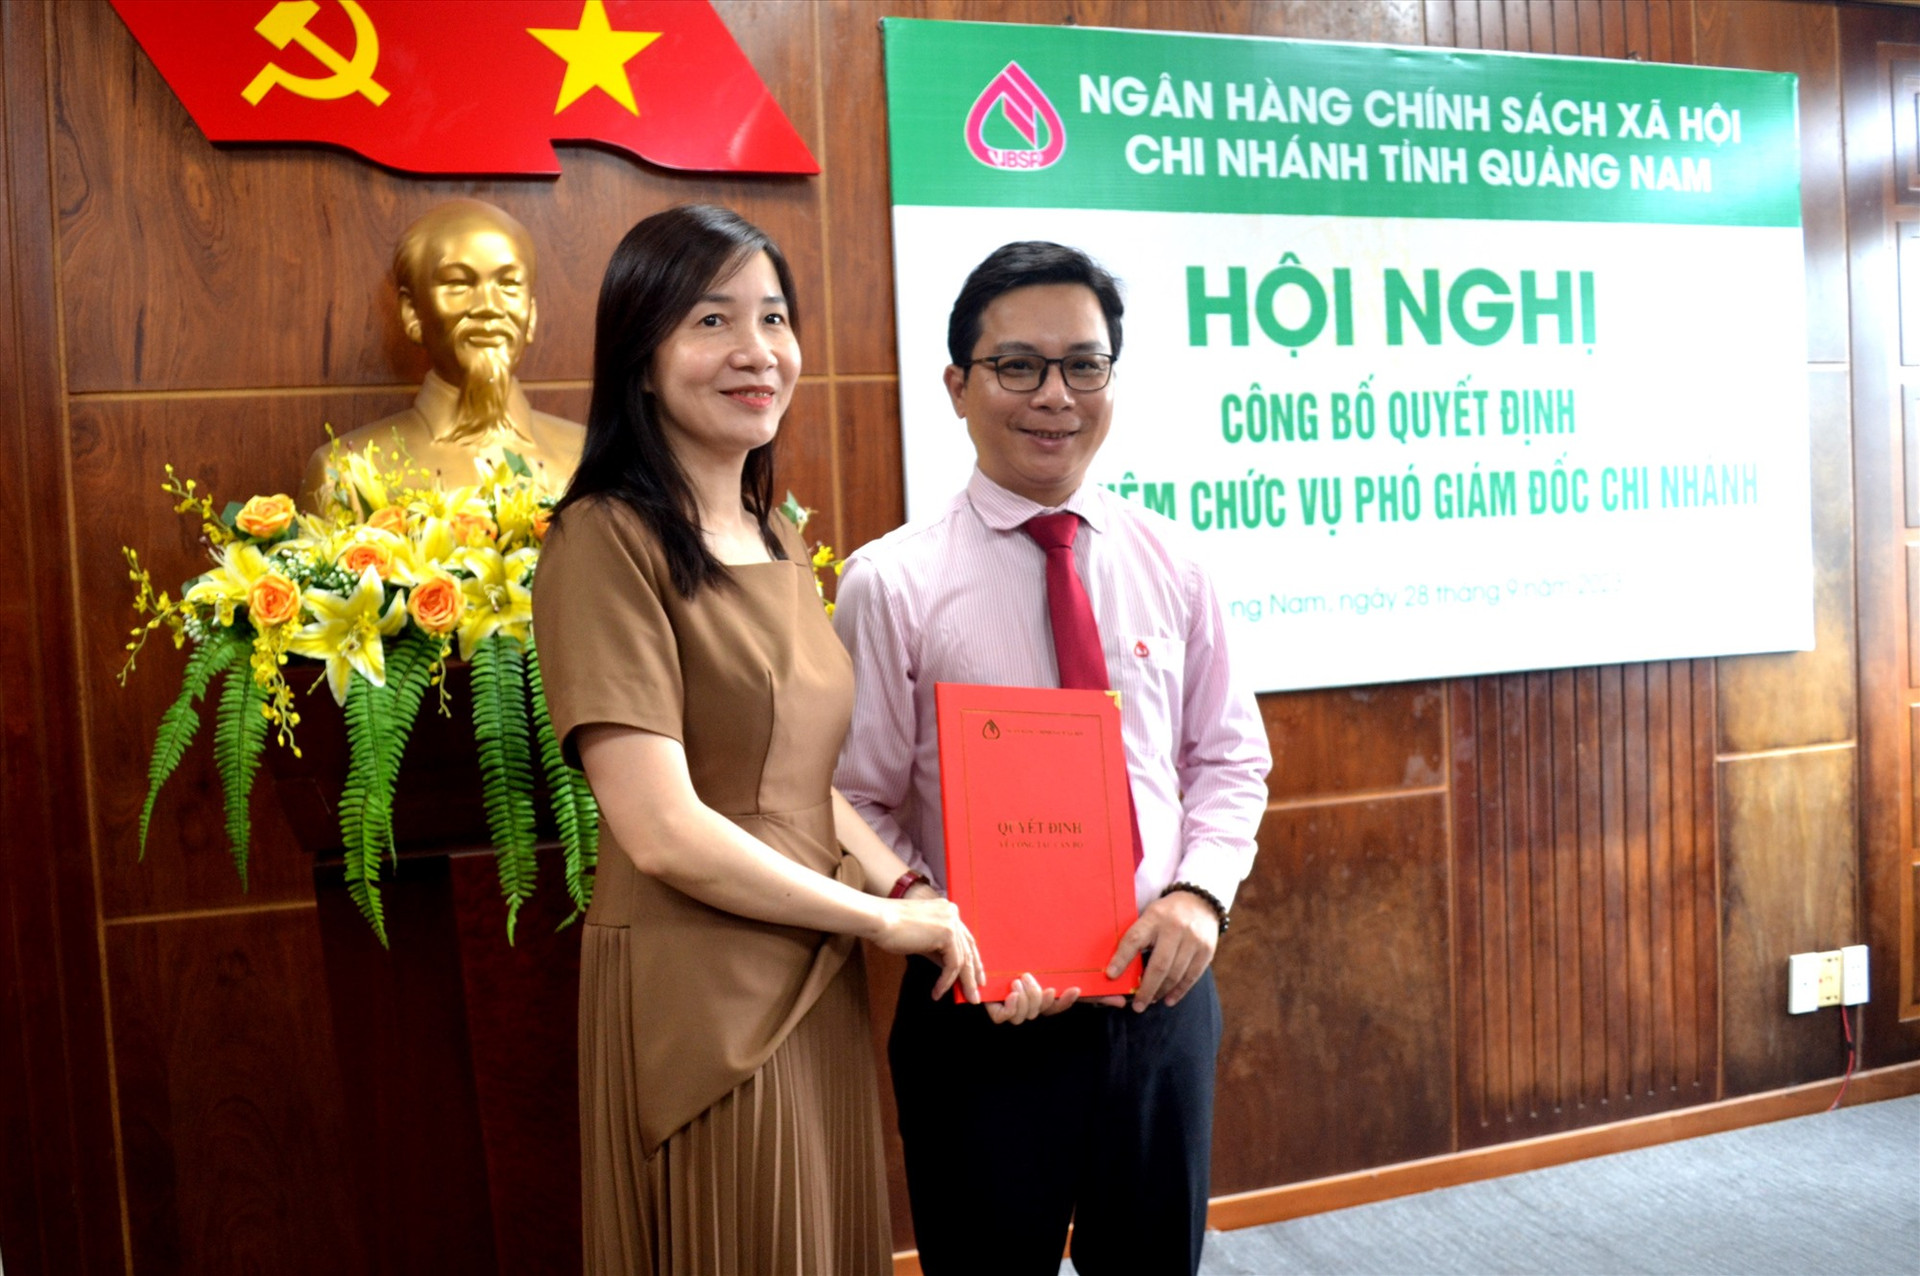 Phó Tổng Giám đốc Ngân hàng CSXH Việt Nam Nguyễn Thị Hằng trao quyết định bổ nhiệm ông Nguyễn Dương Quang. Ảnh: Q.VIỆT